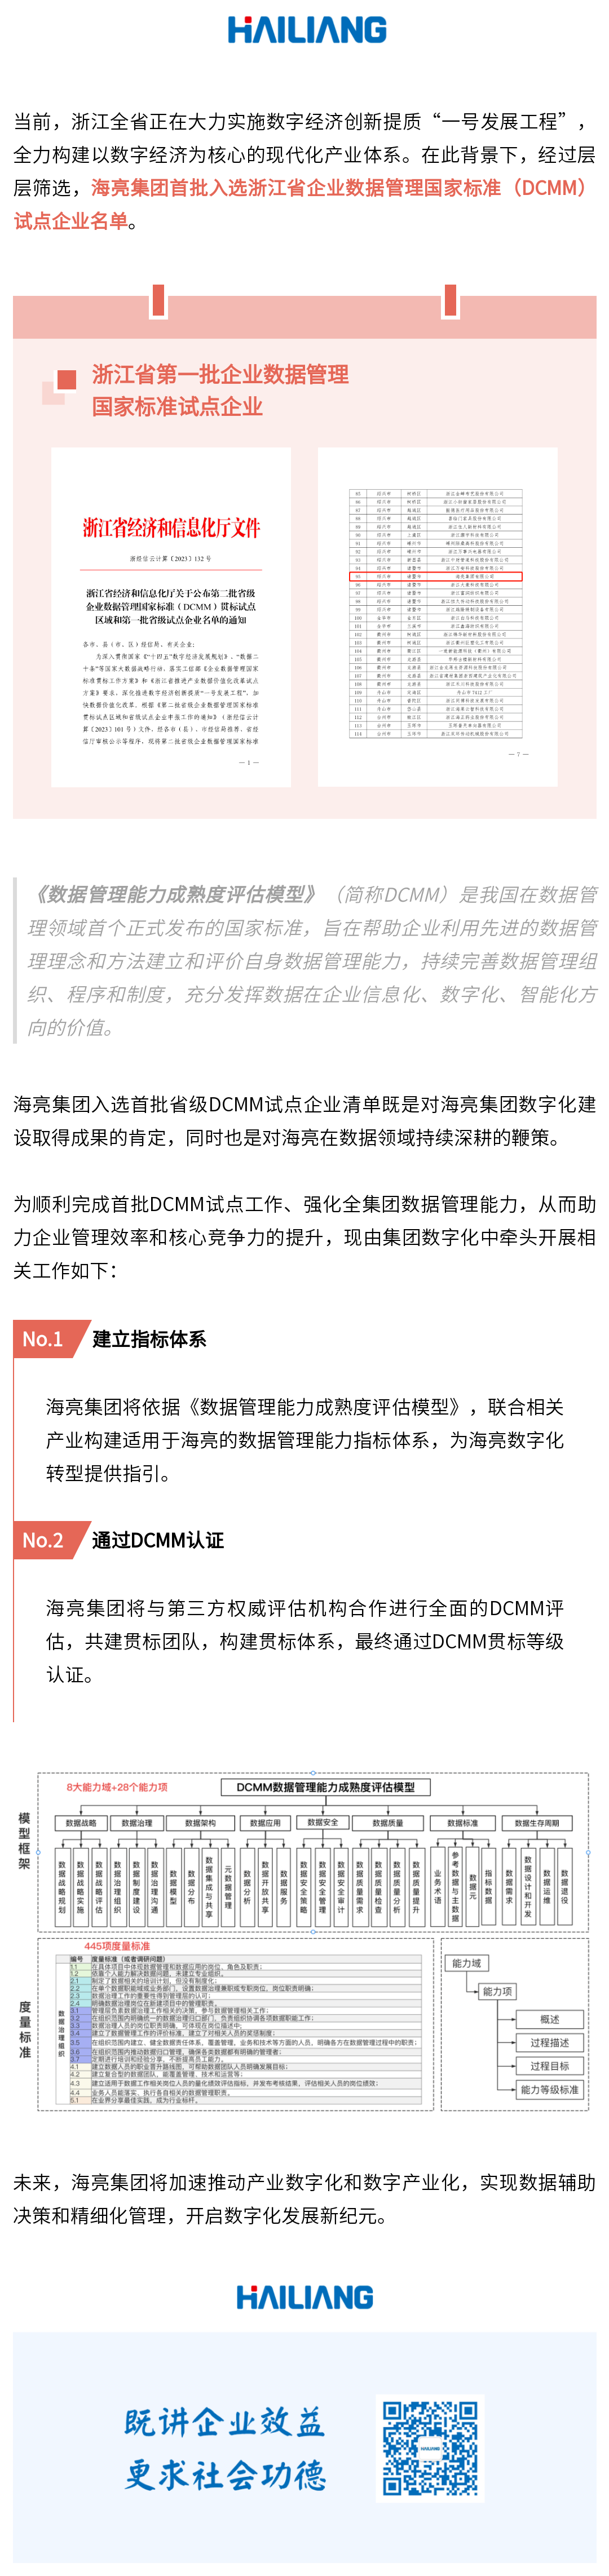 喜讯｜海亮集团入选浙江省第一批企业数据管理国家标准（DCMM）试点企业名单